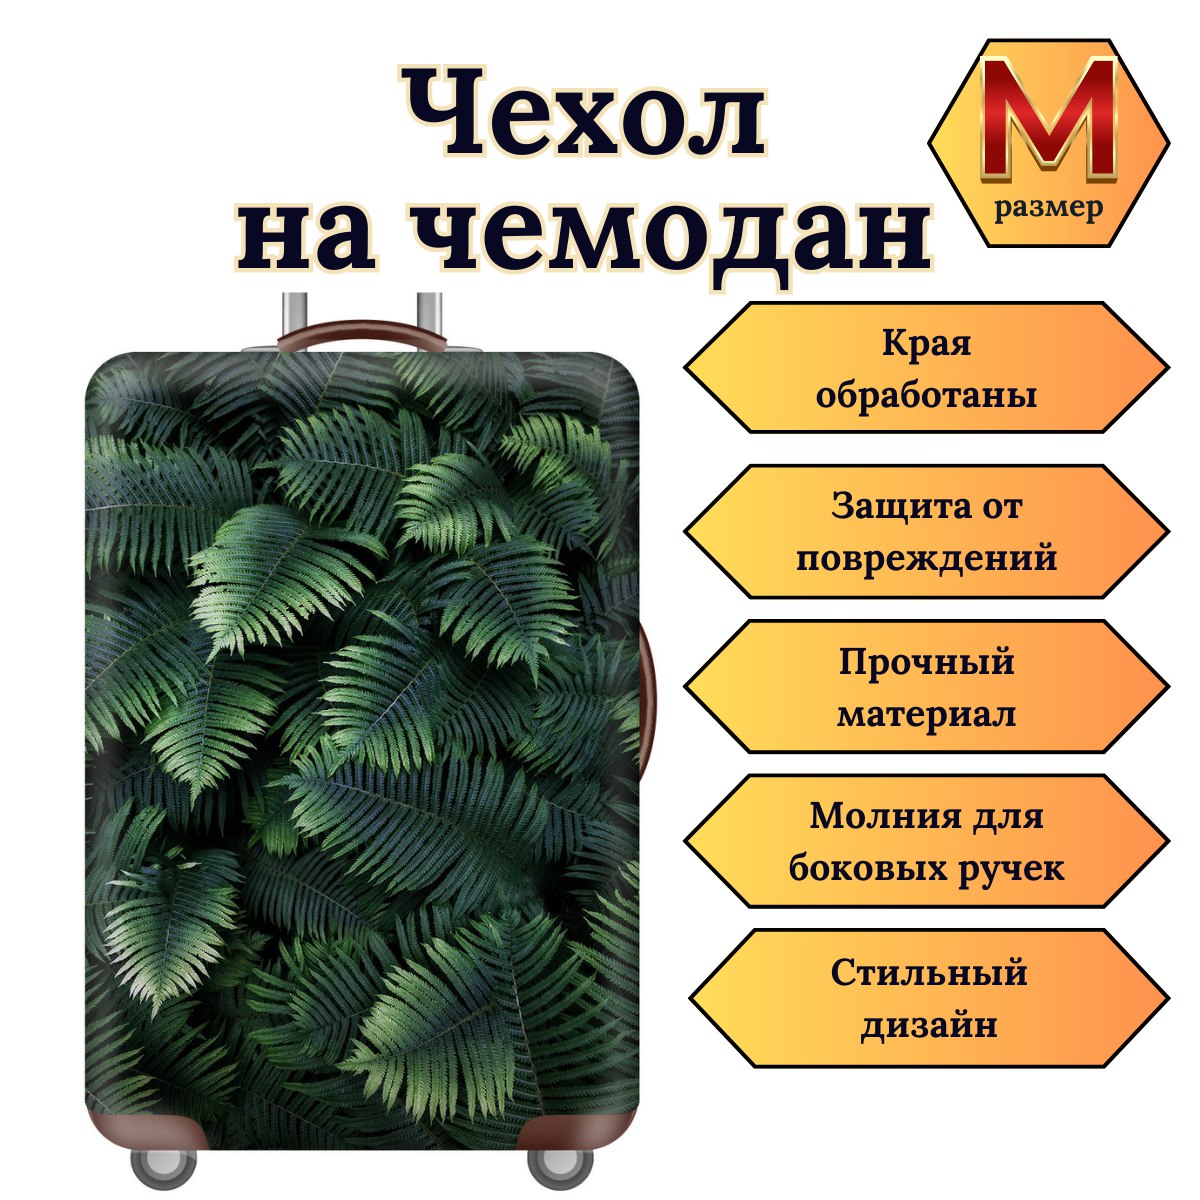 Чехол для чемодана Slaventii 123 зеленый папоротник, M